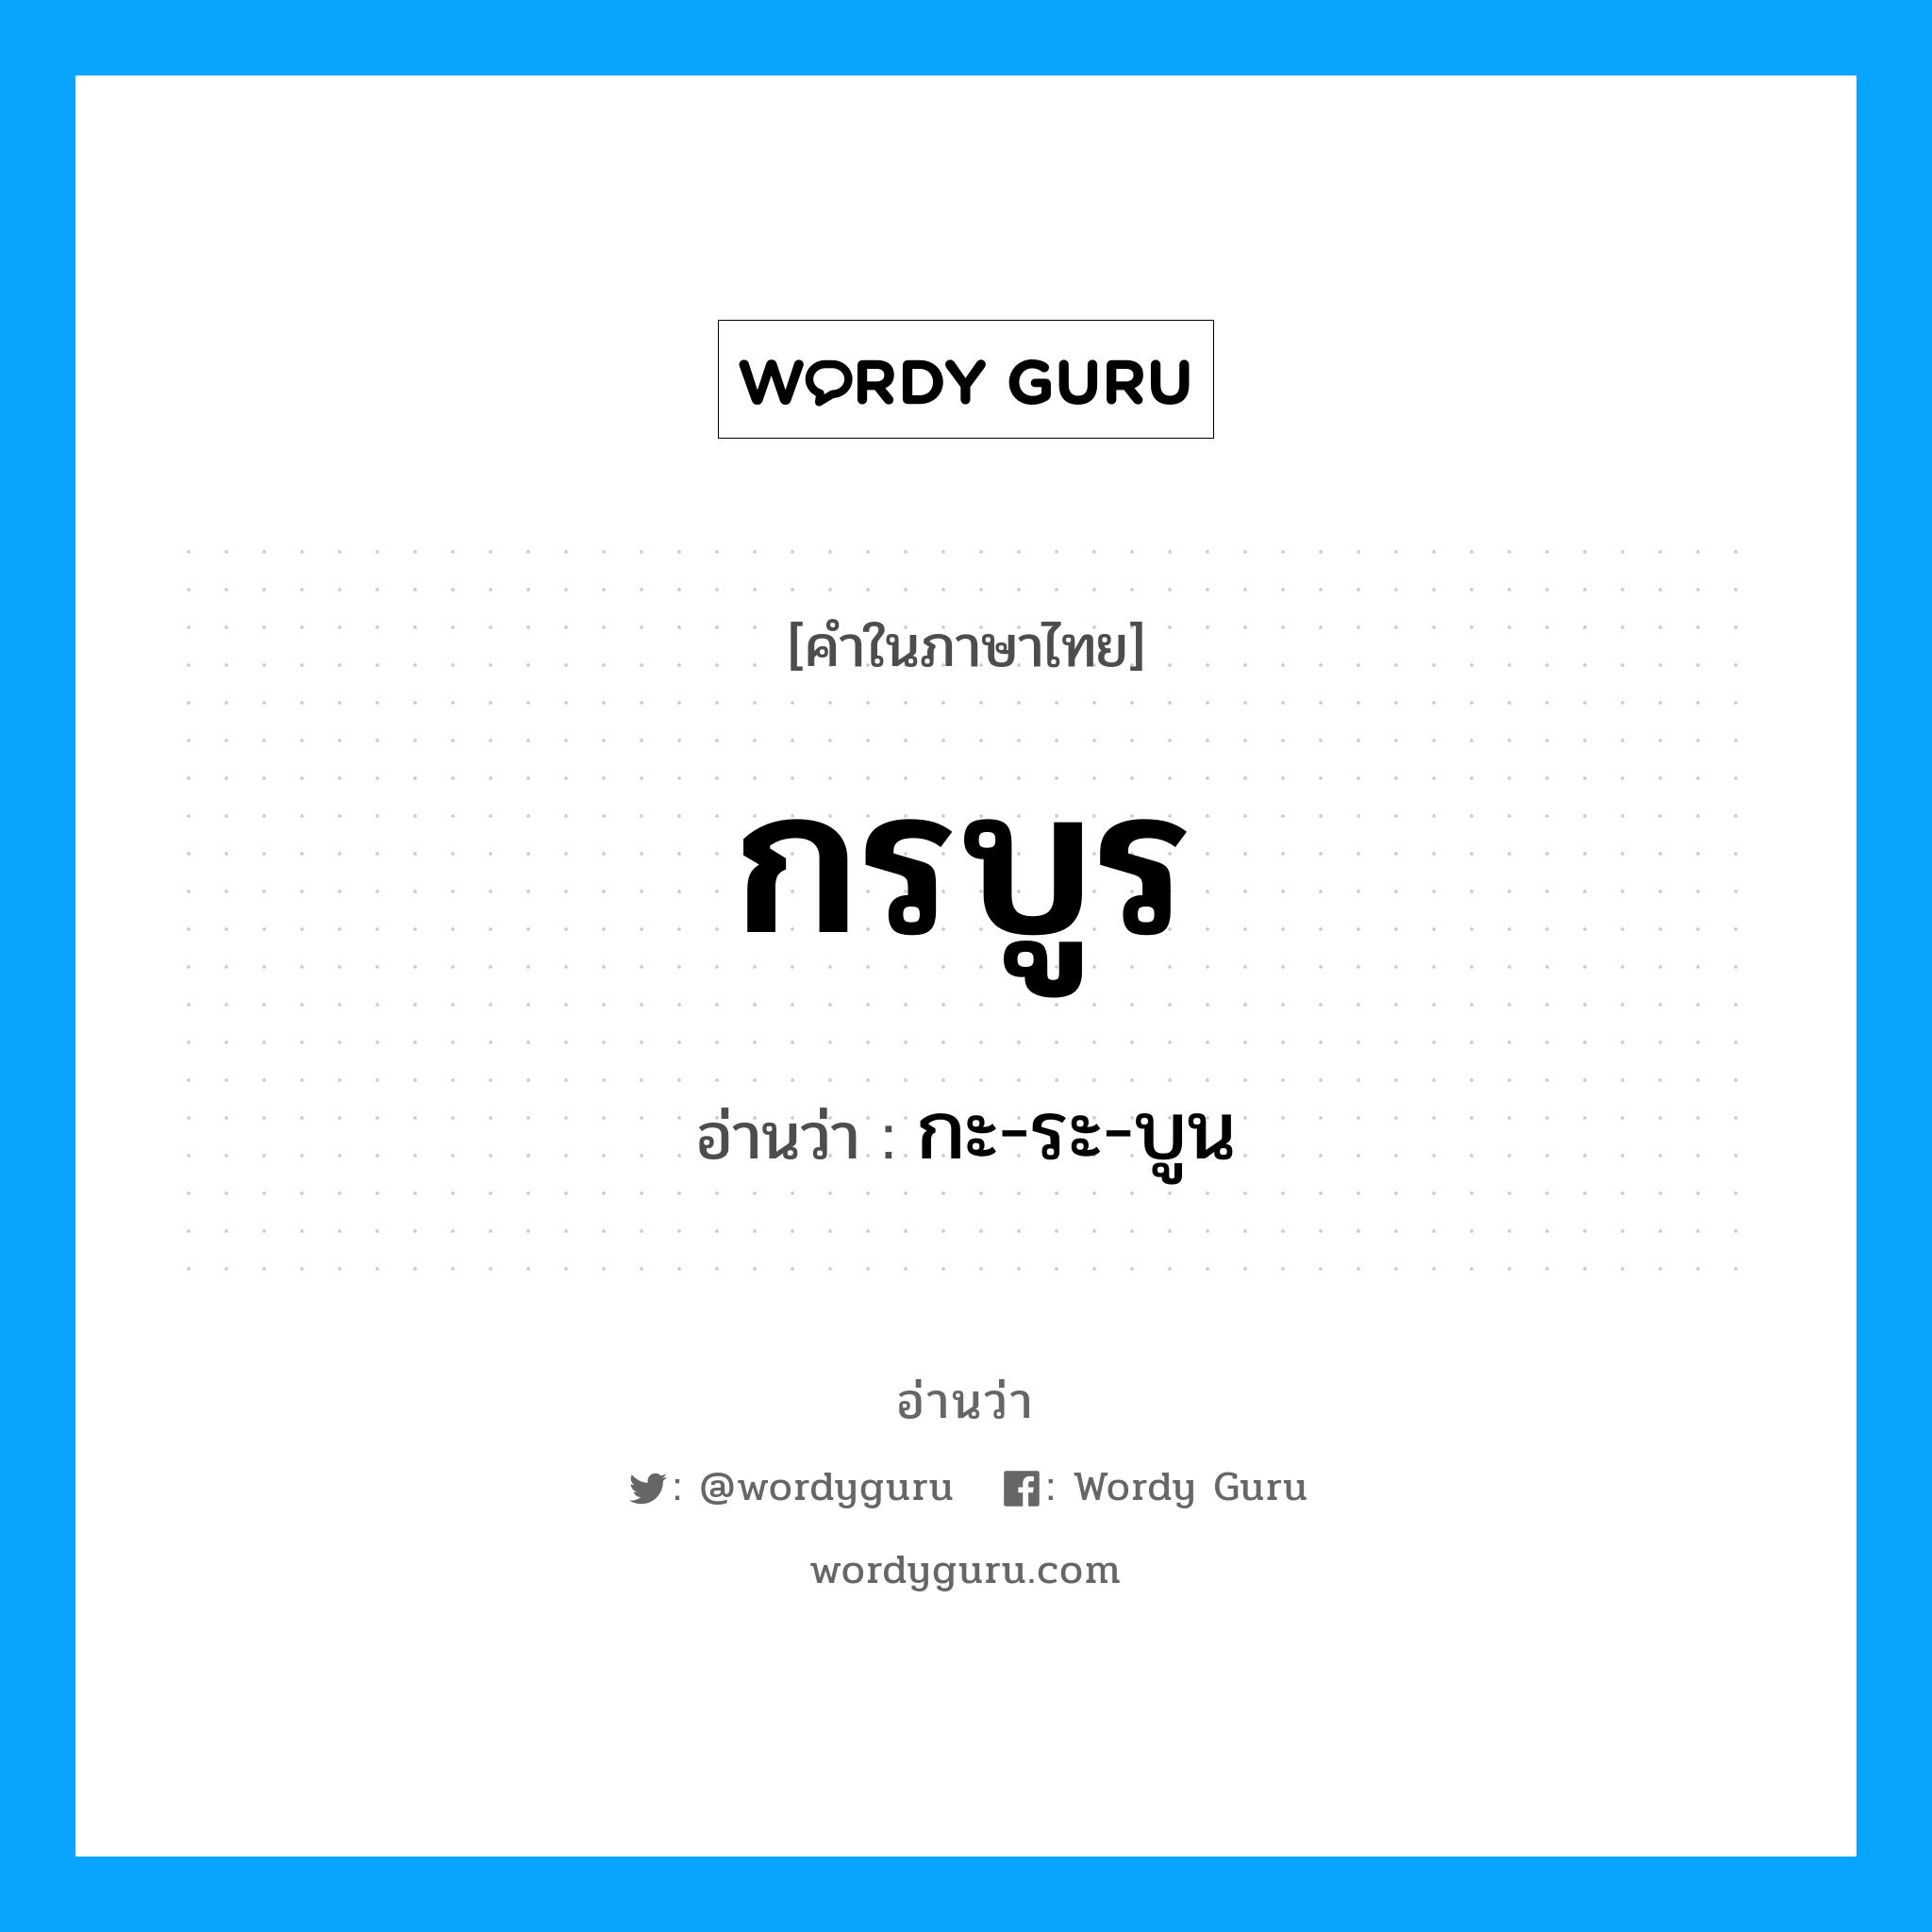 กะ-ระ-บูน เป็นคำอ่านของคำไหน?, คำในภาษาไทย กะ-ระ-บูน อ่านว่า กรบูร